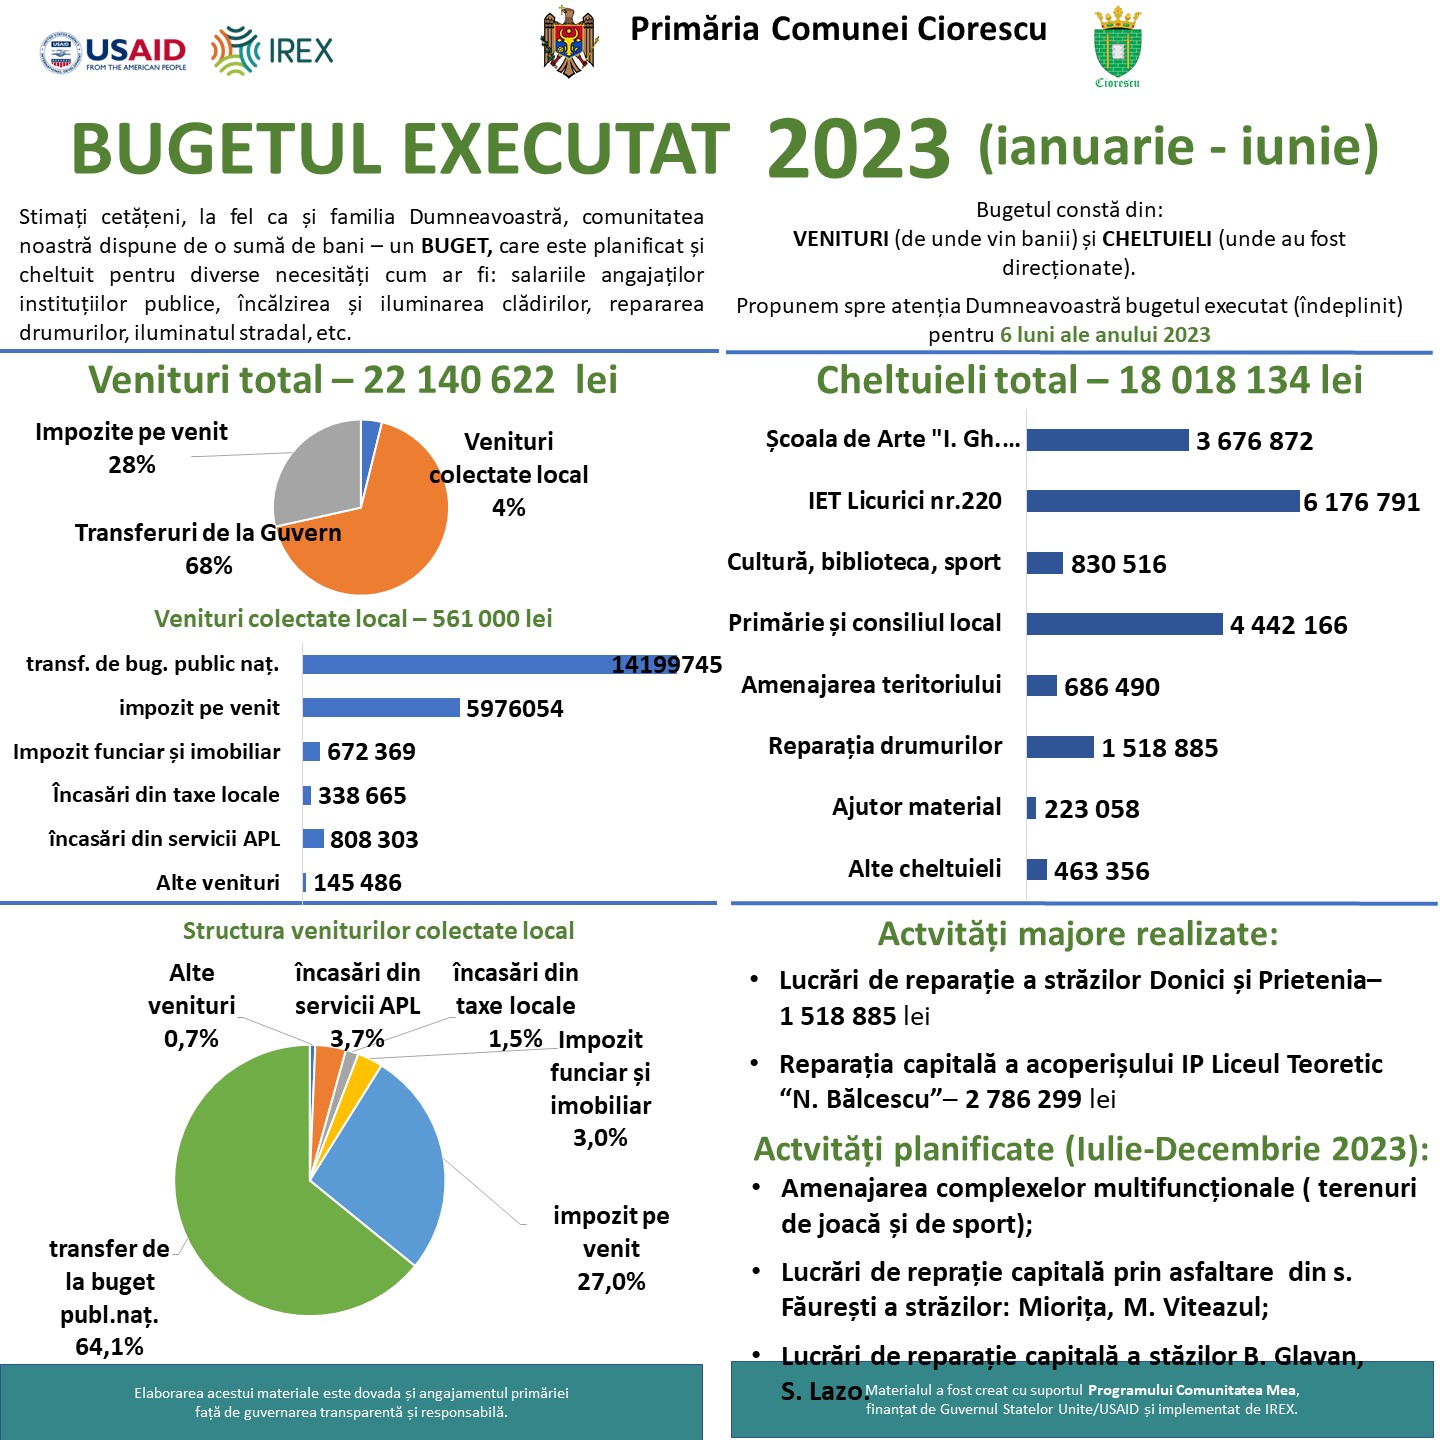 Bugetul executat 2023